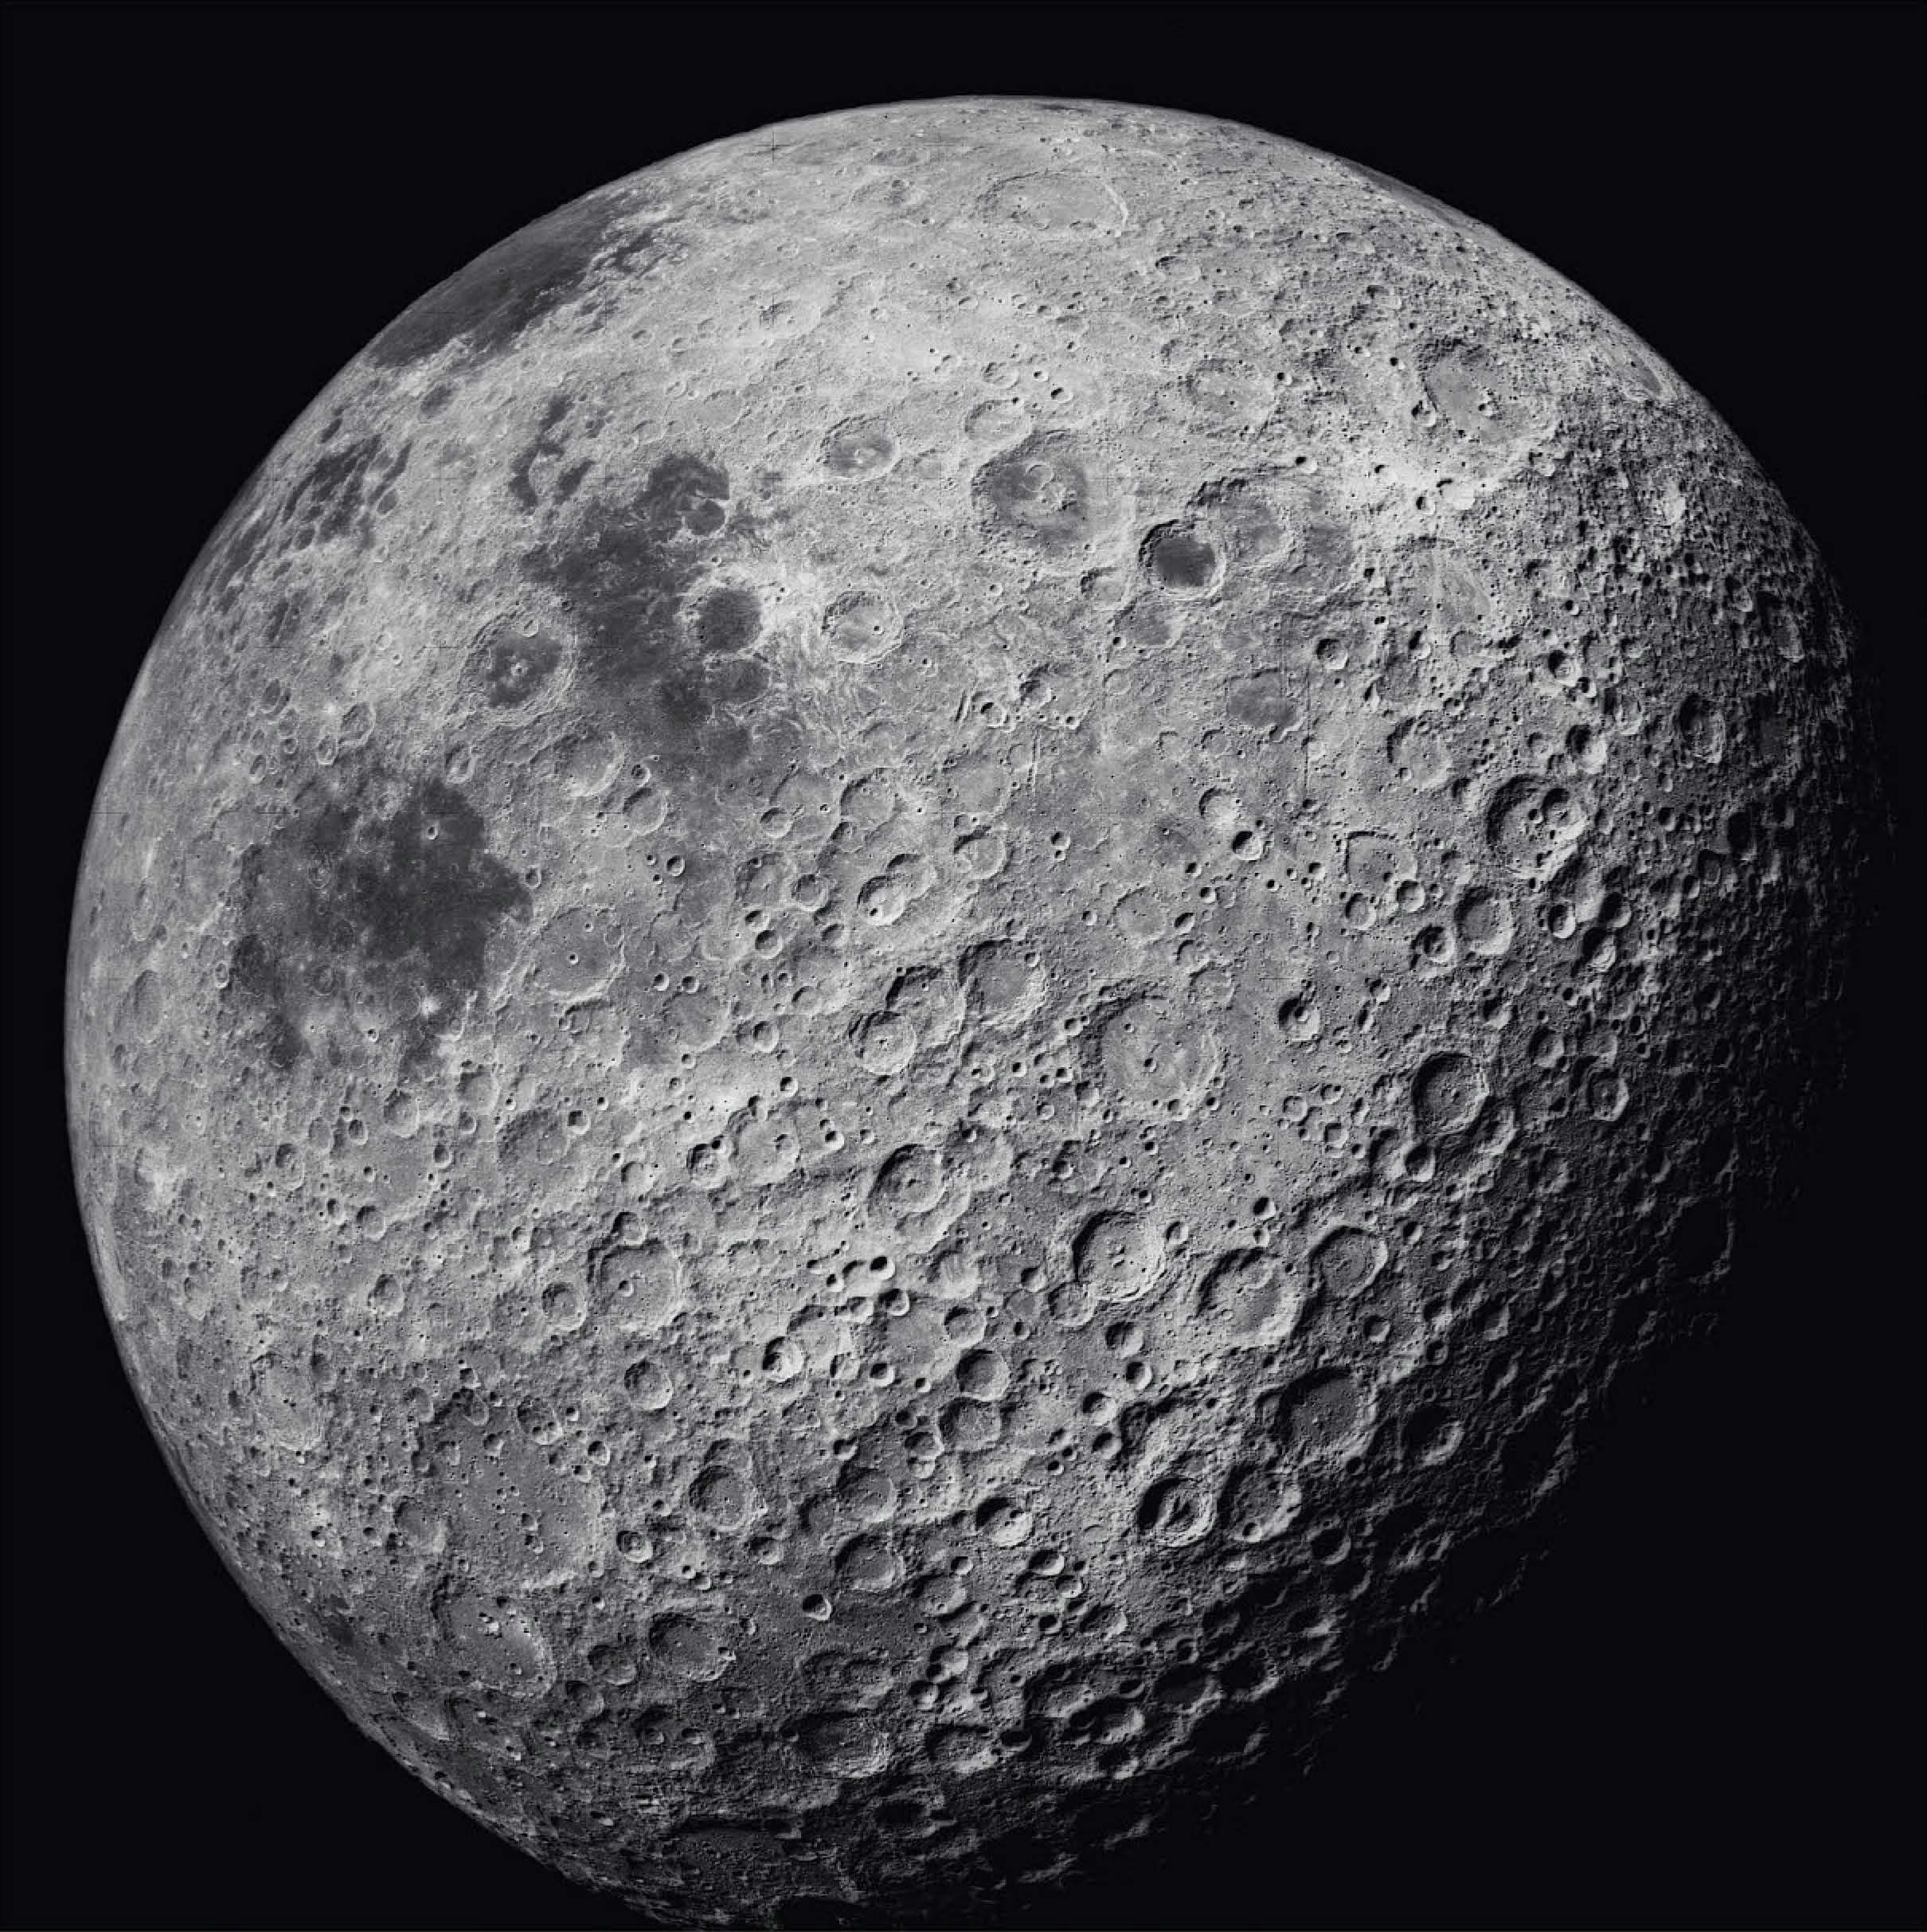 超絶美しい宇宙の記録 Nasaがハッセルブラッドで撮った写真 Moonshots 宇宙探査50年をとらえた奇跡の記録写真 Pictures